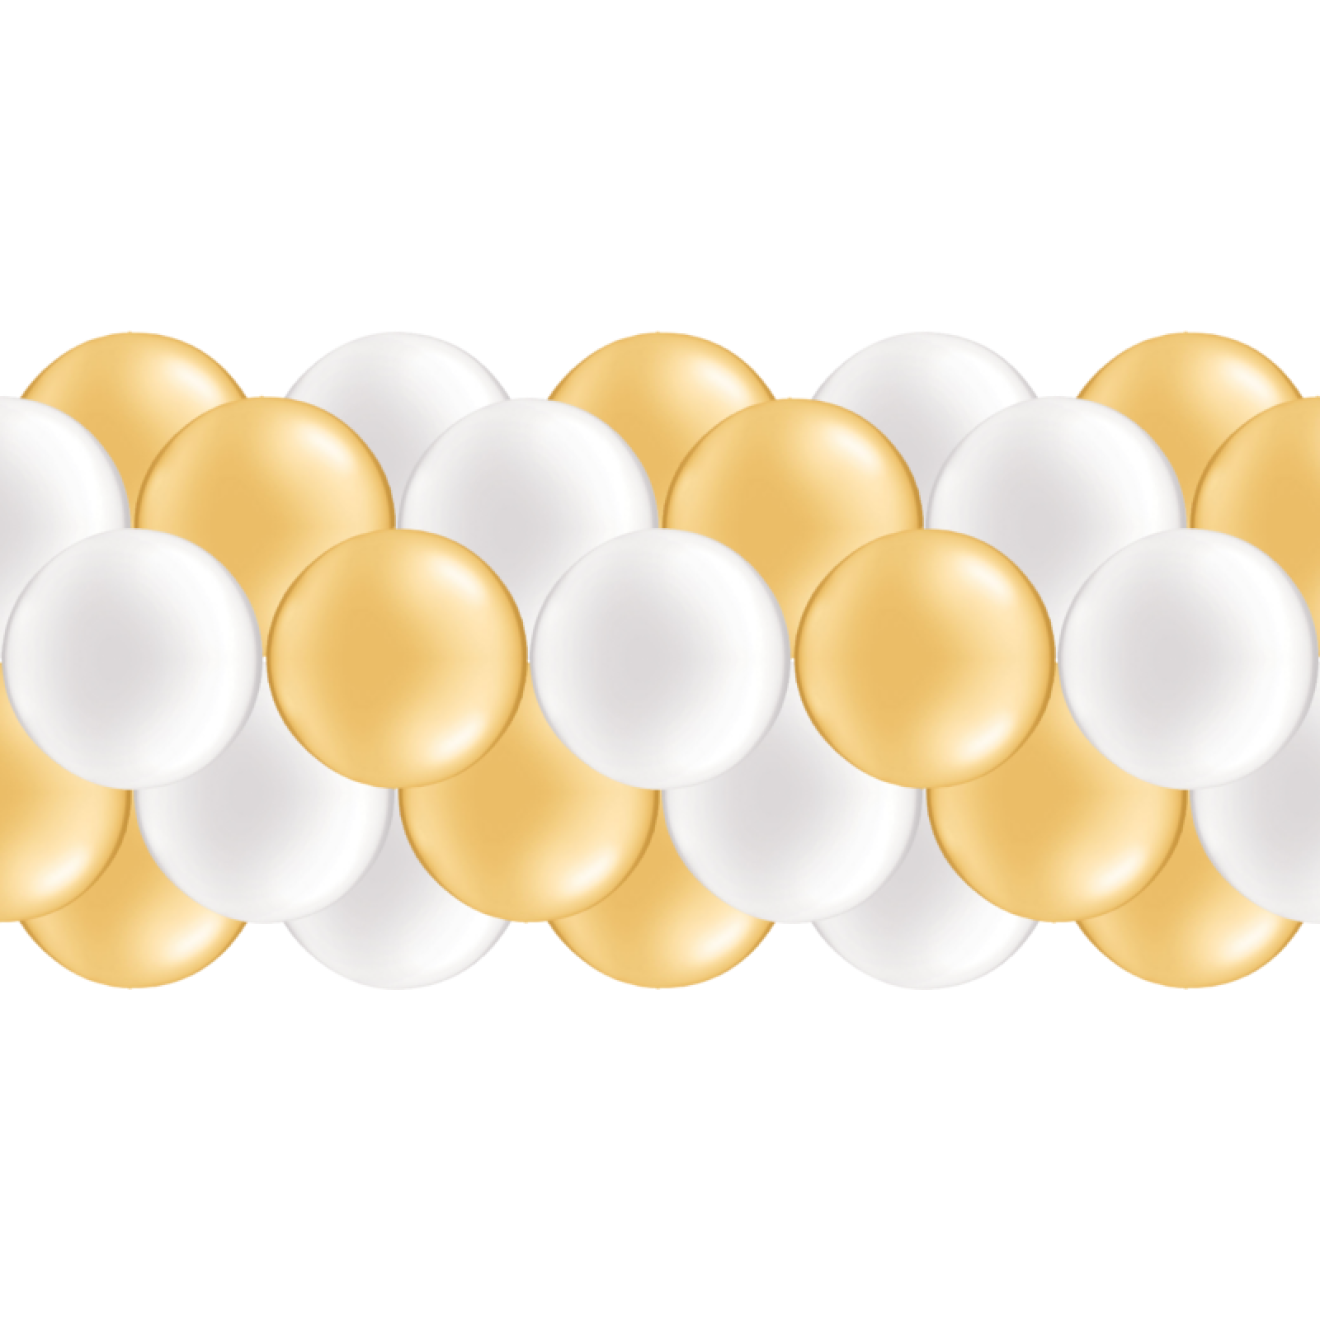 Luftballongirlanden-Set Gold & Weiß (Metallic / Glänzend) ab 3 m